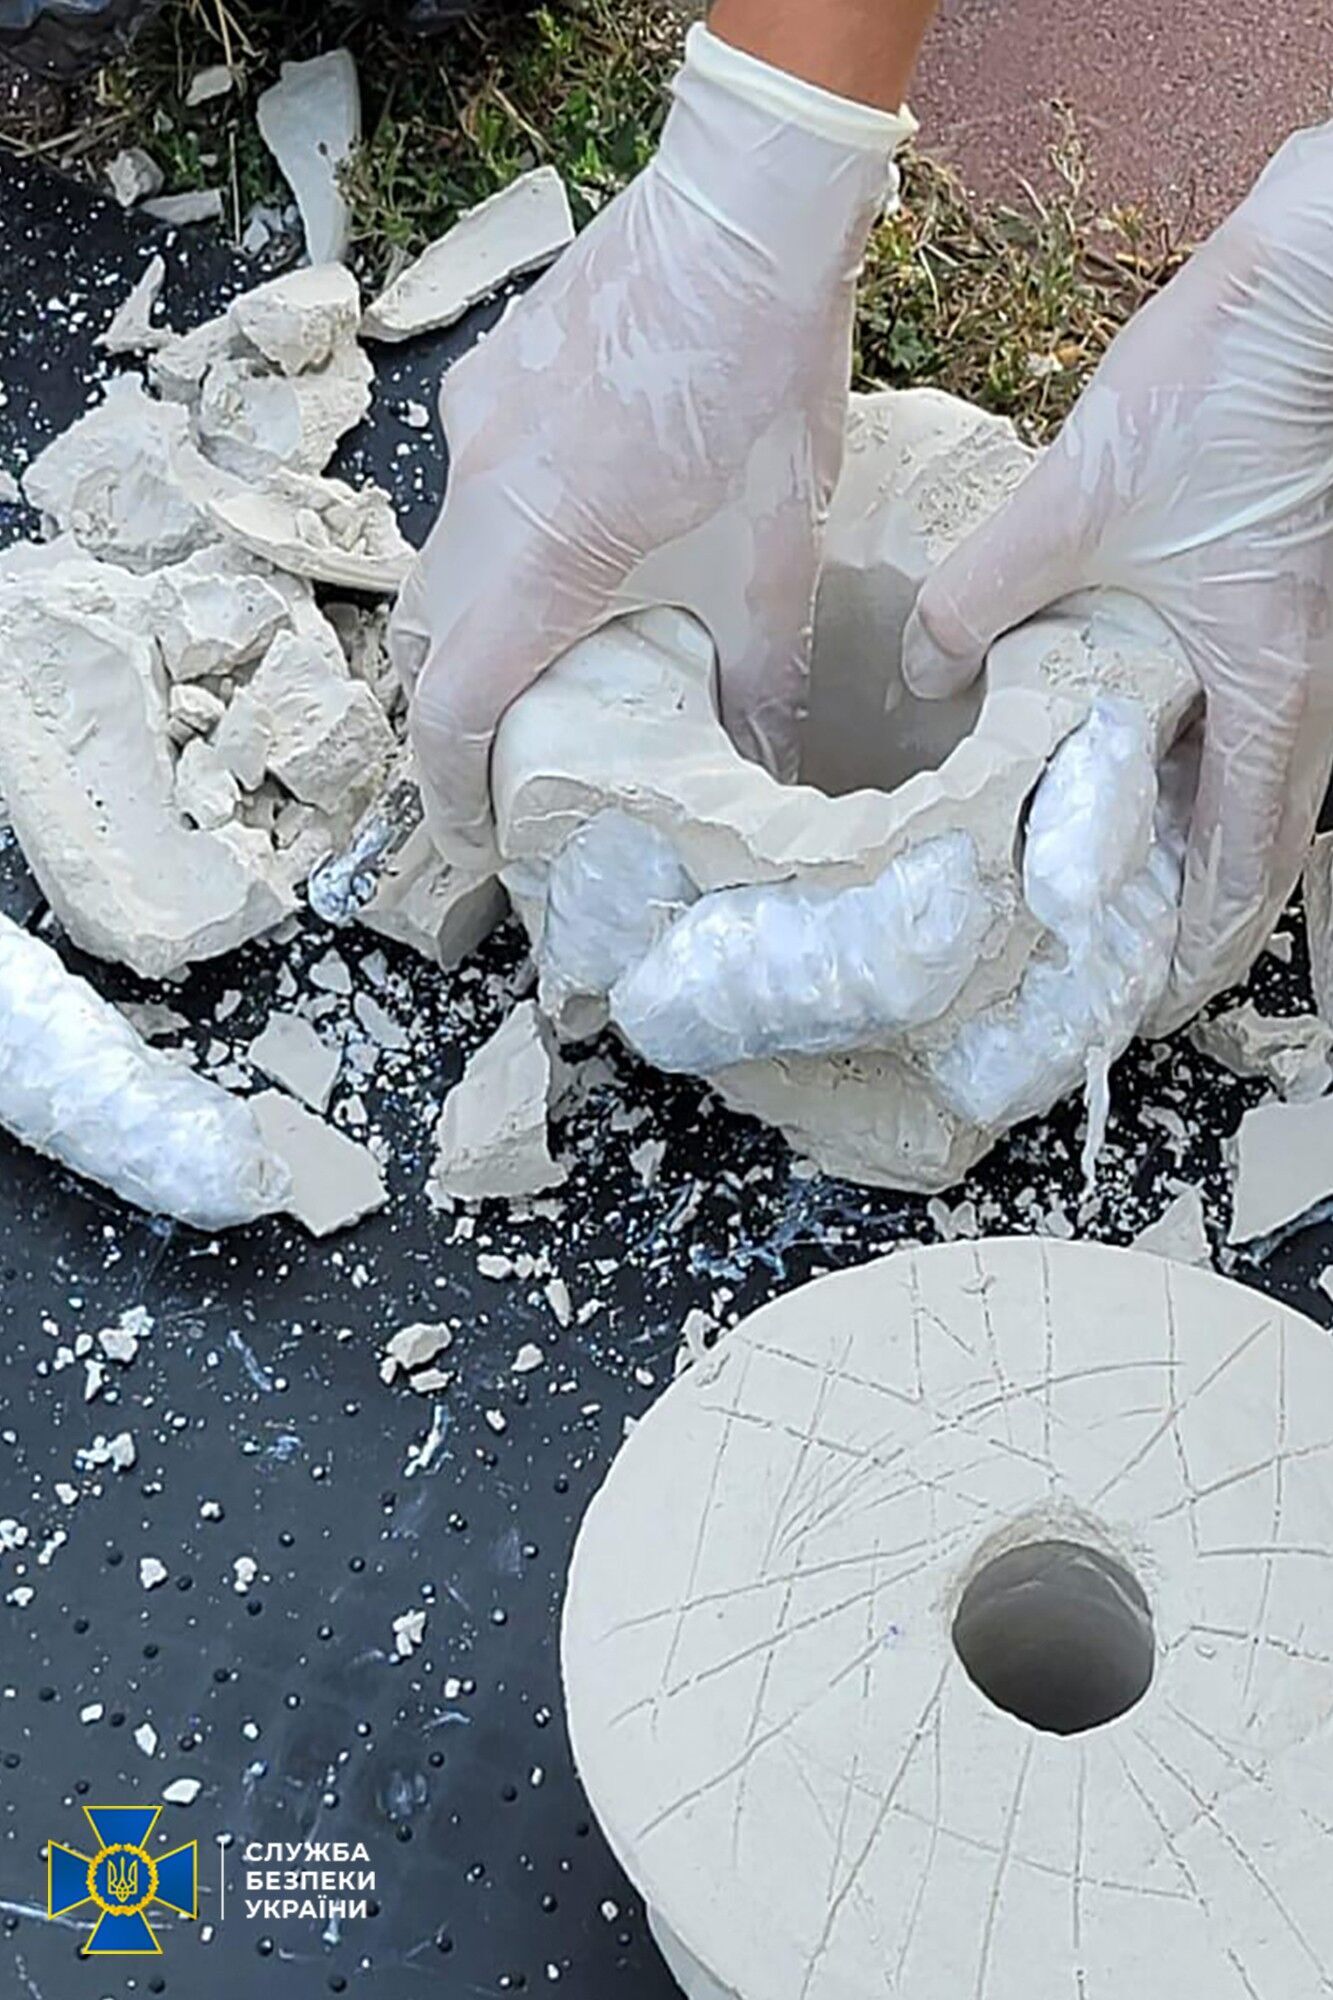 Наркотики ховали в глечиках і садових скульптурах.